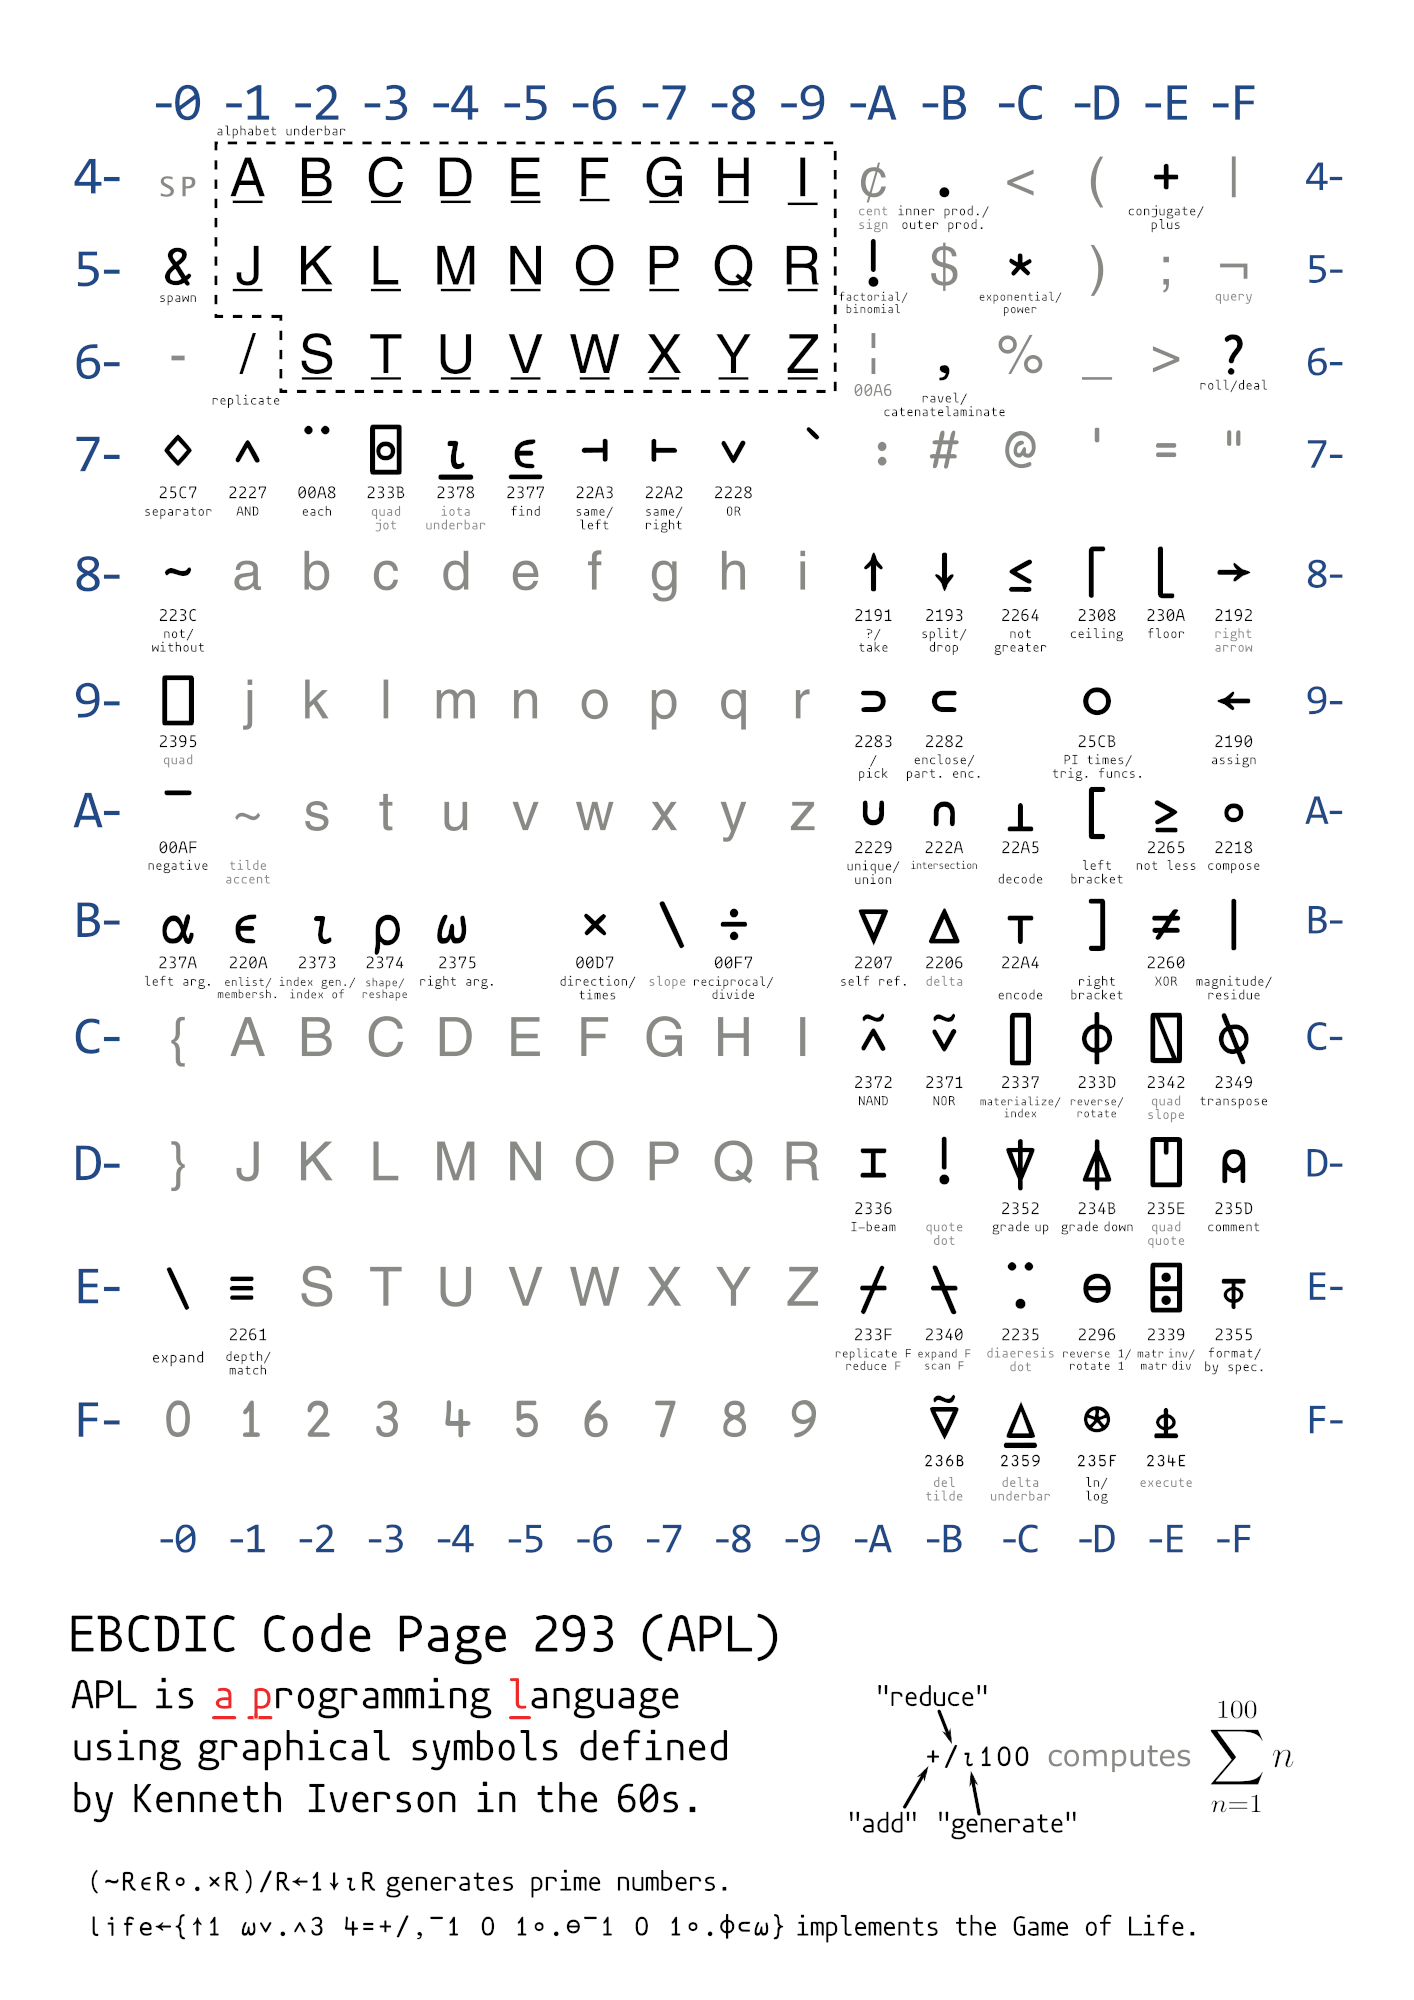 A Programming Language - EBCDIC cp 293